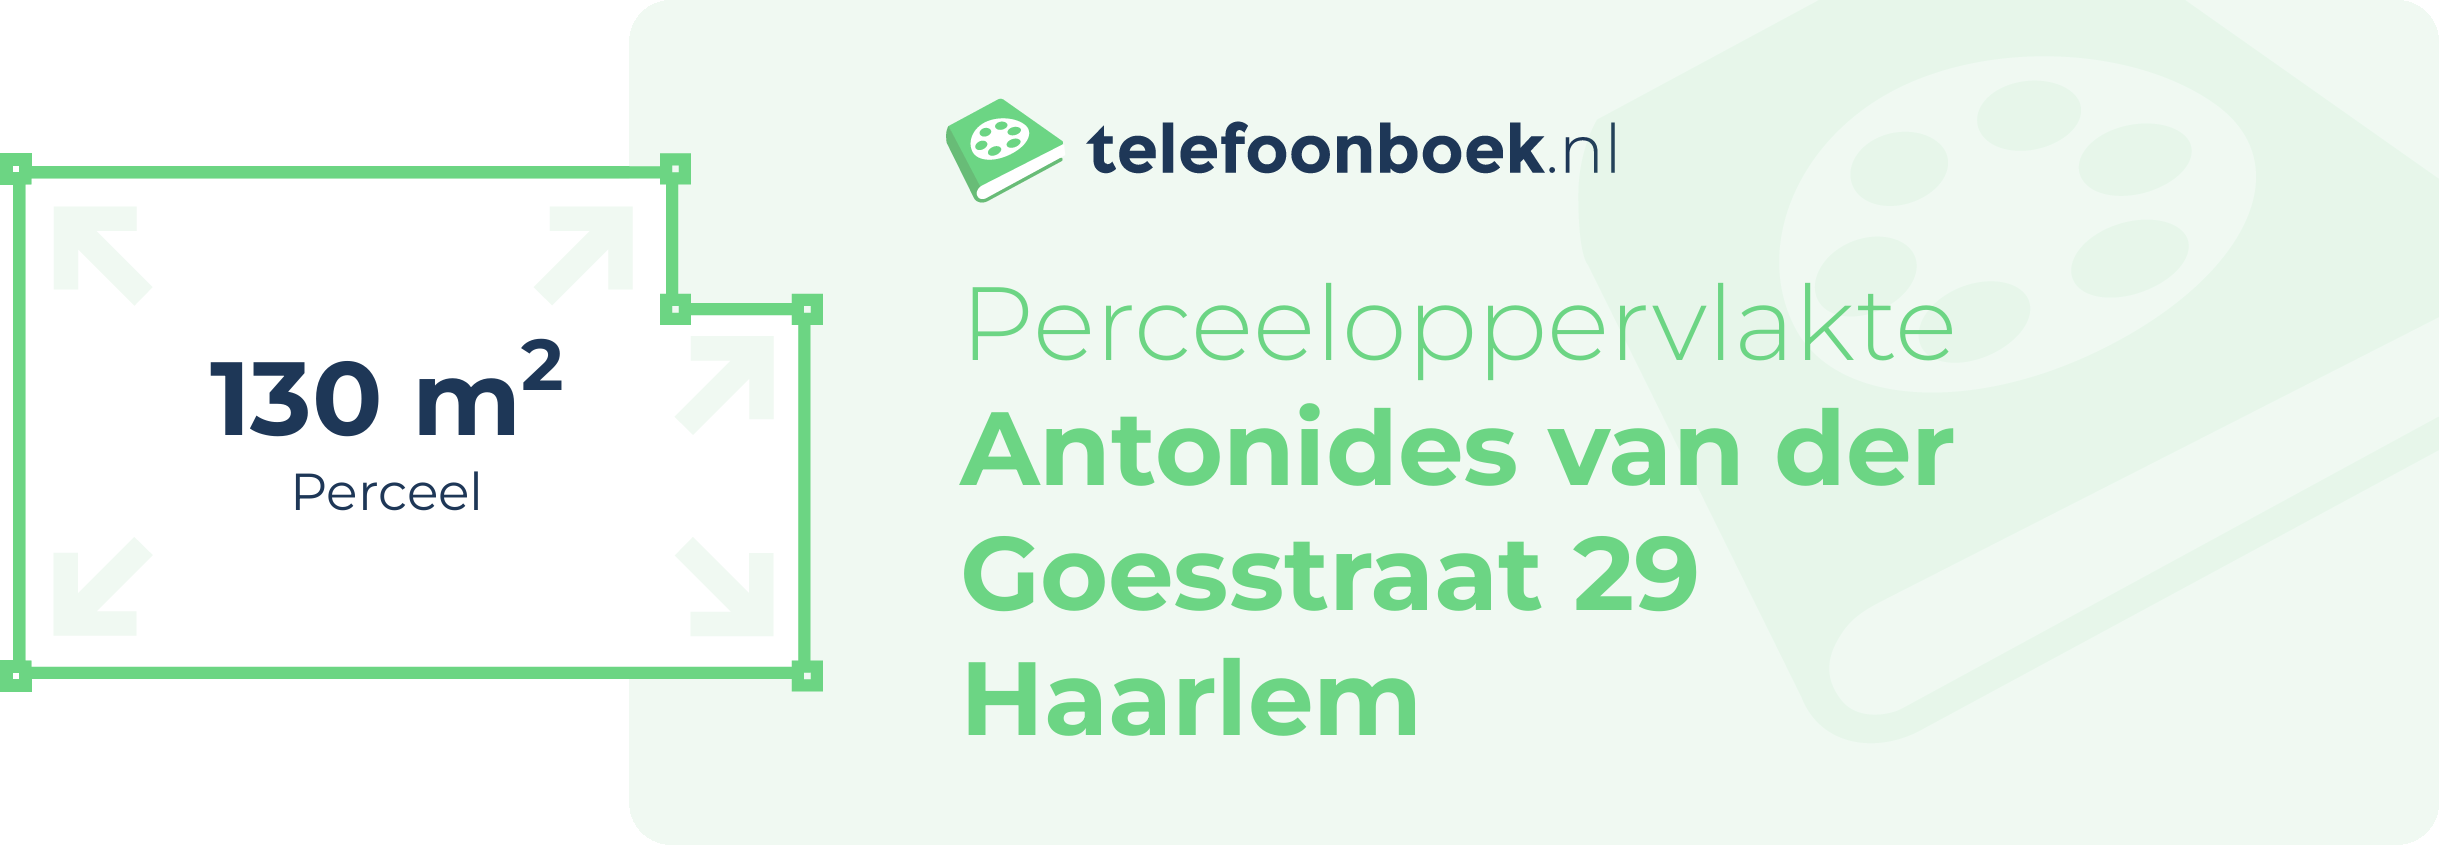 Perceeloppervlakte Antonides Van Der Goesstraat 29 Haarlem